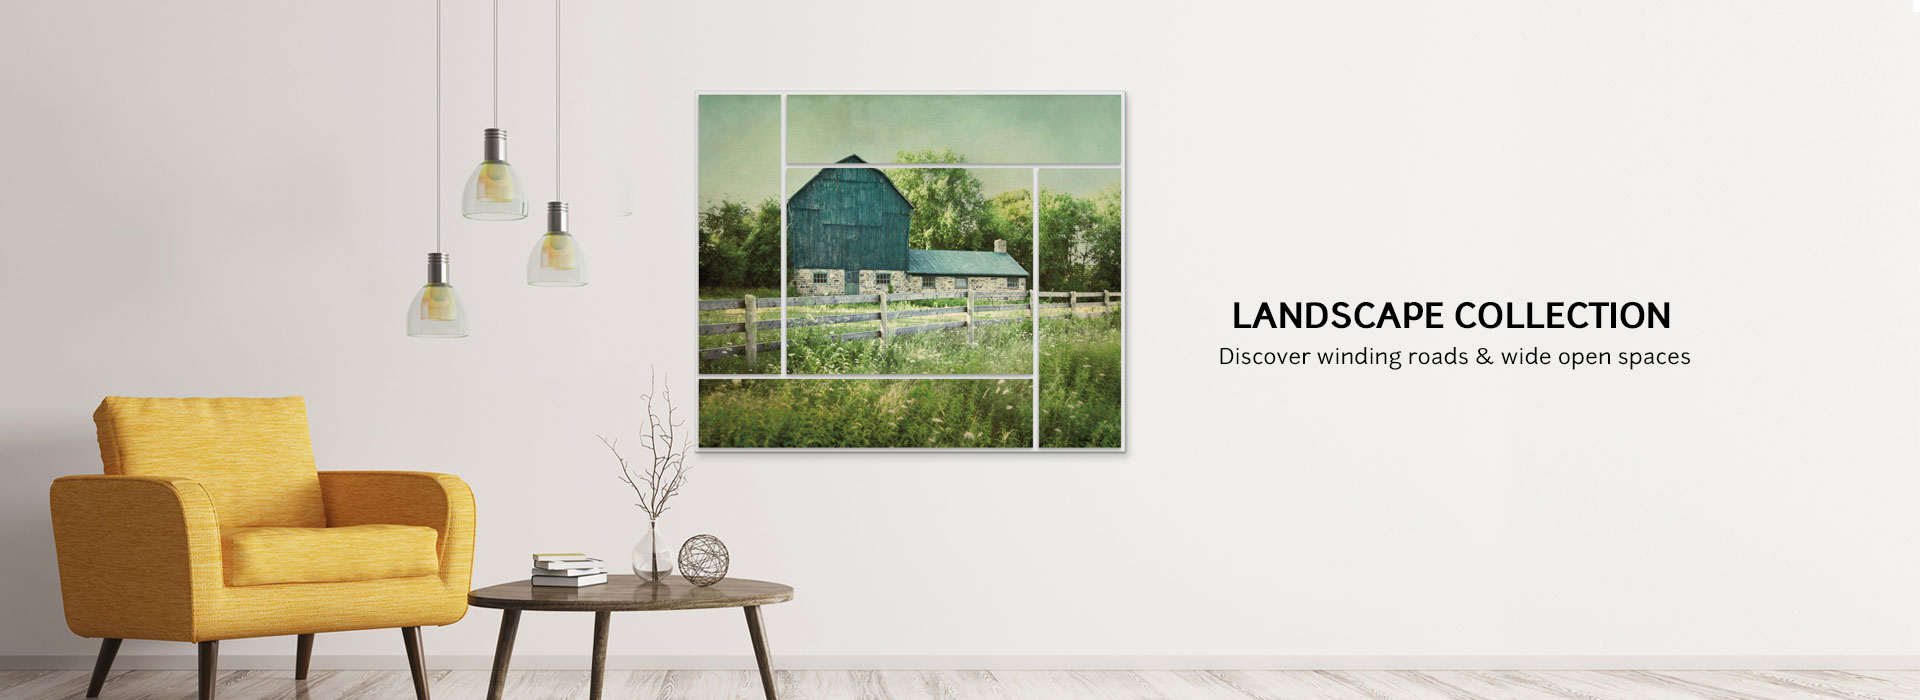 Landscape Collection